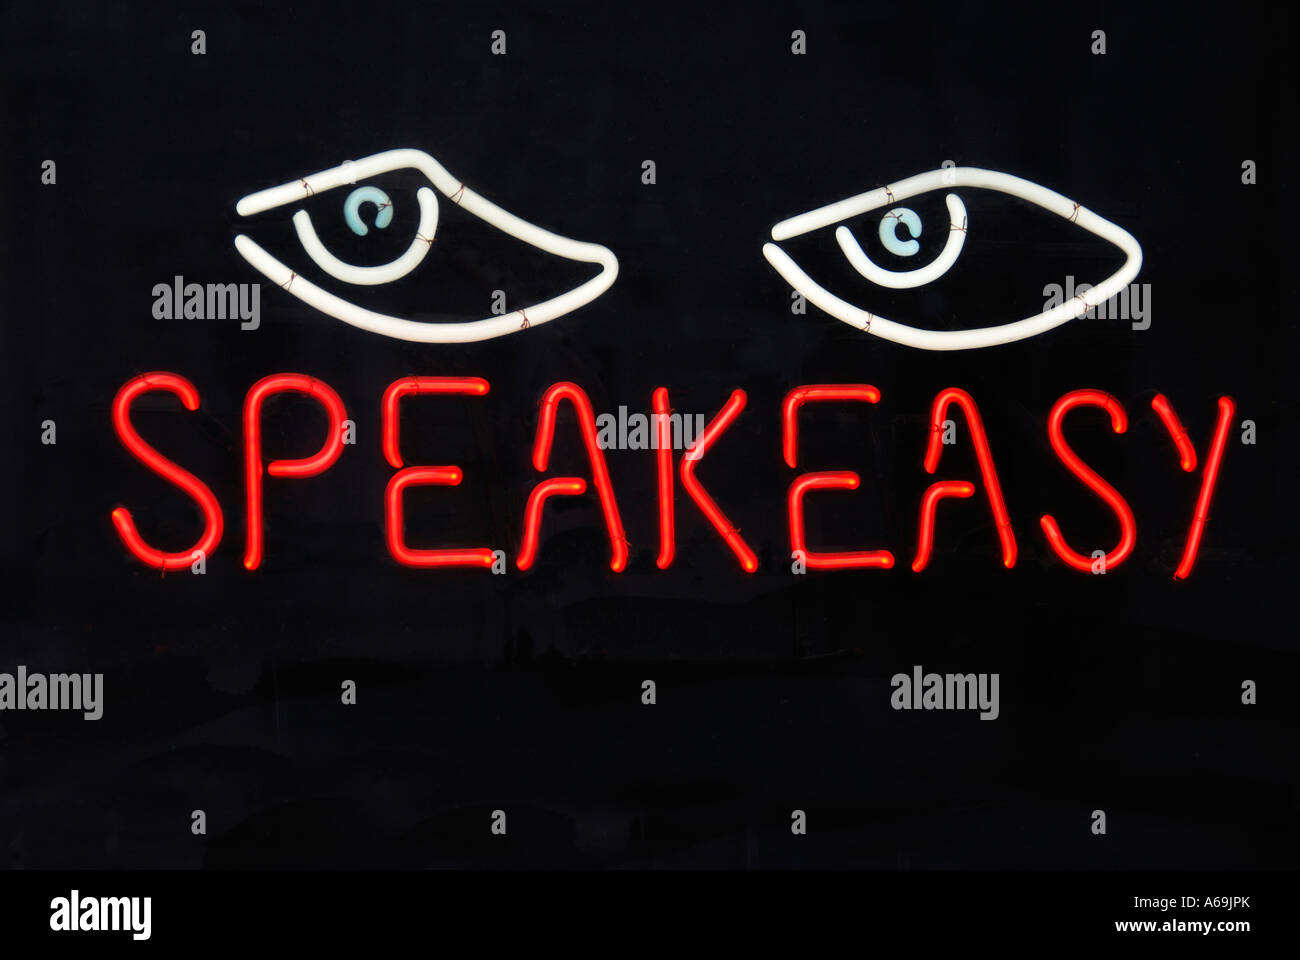 'Neon ^Speakeasy sign, 'dark background', USA' Stock Photo